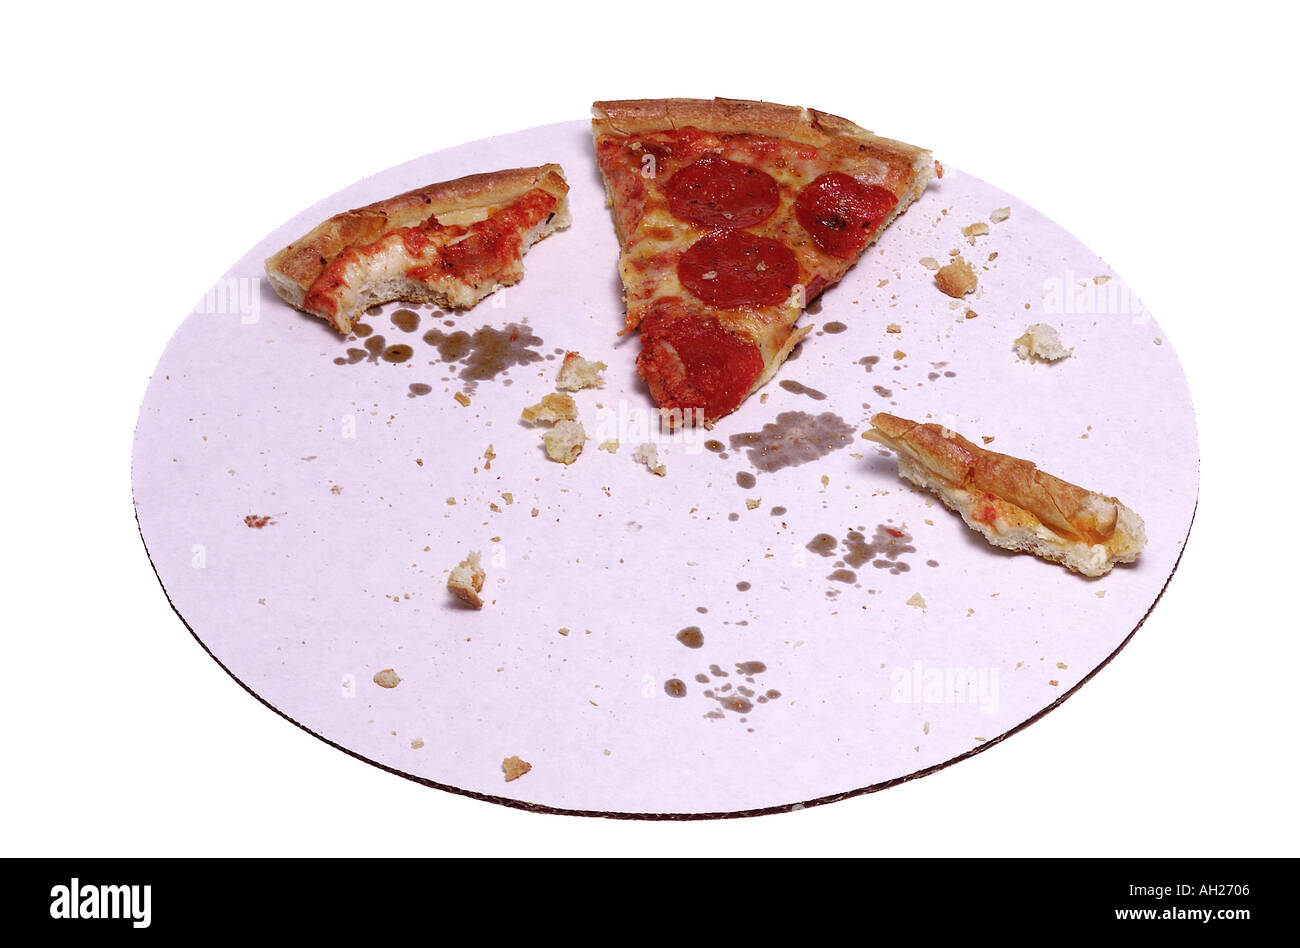 Übrig gebliebene Peperoni-Pizza auf Karton Tablett Silhouette auf weißem Hintergrund Stockfoto